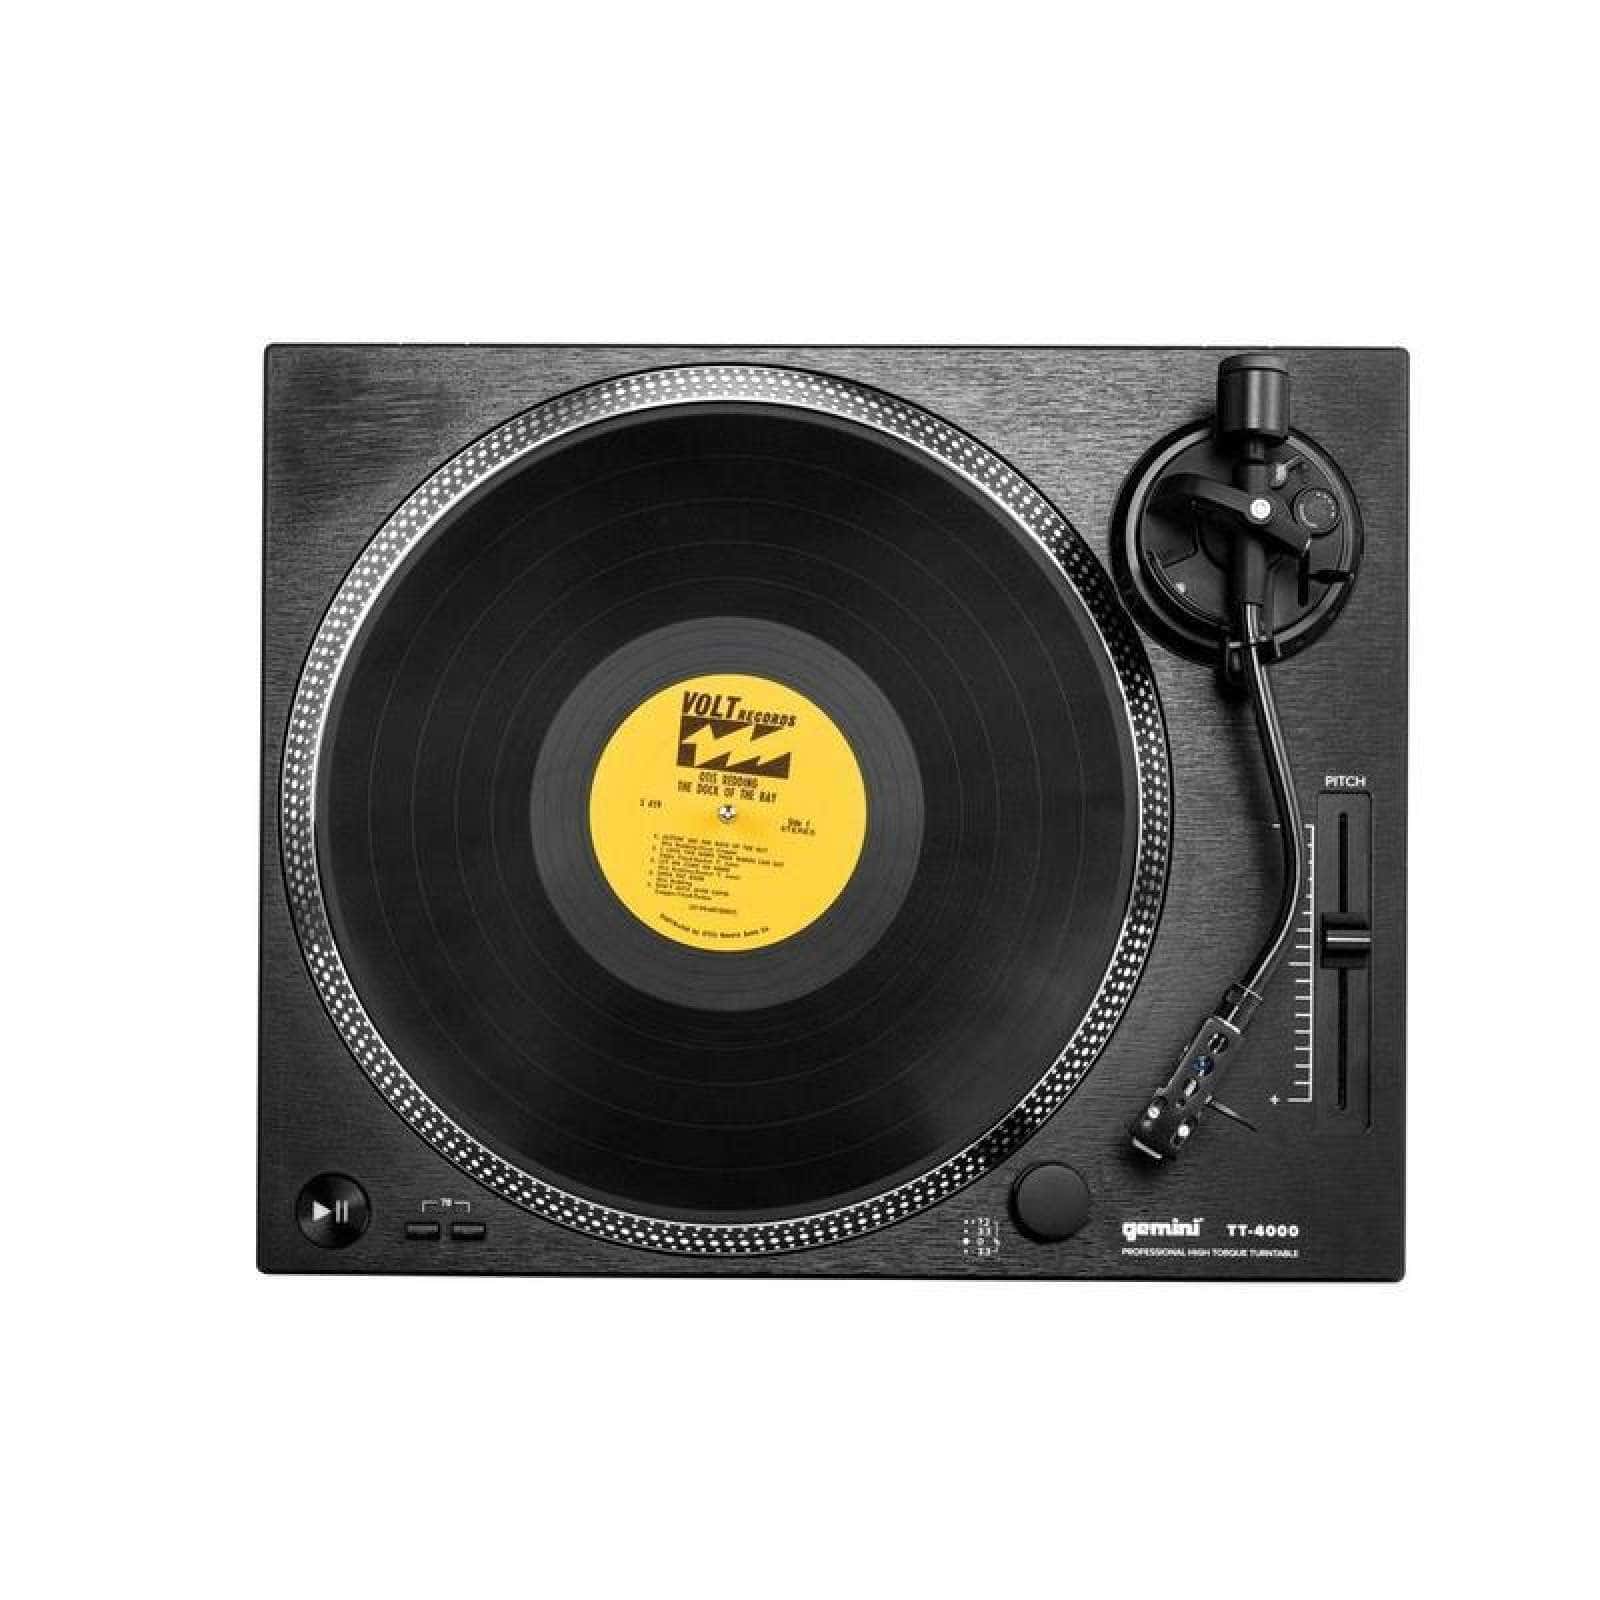 GEMINI TT-4000 - VINYL DJ-DECK - REFURBISHED